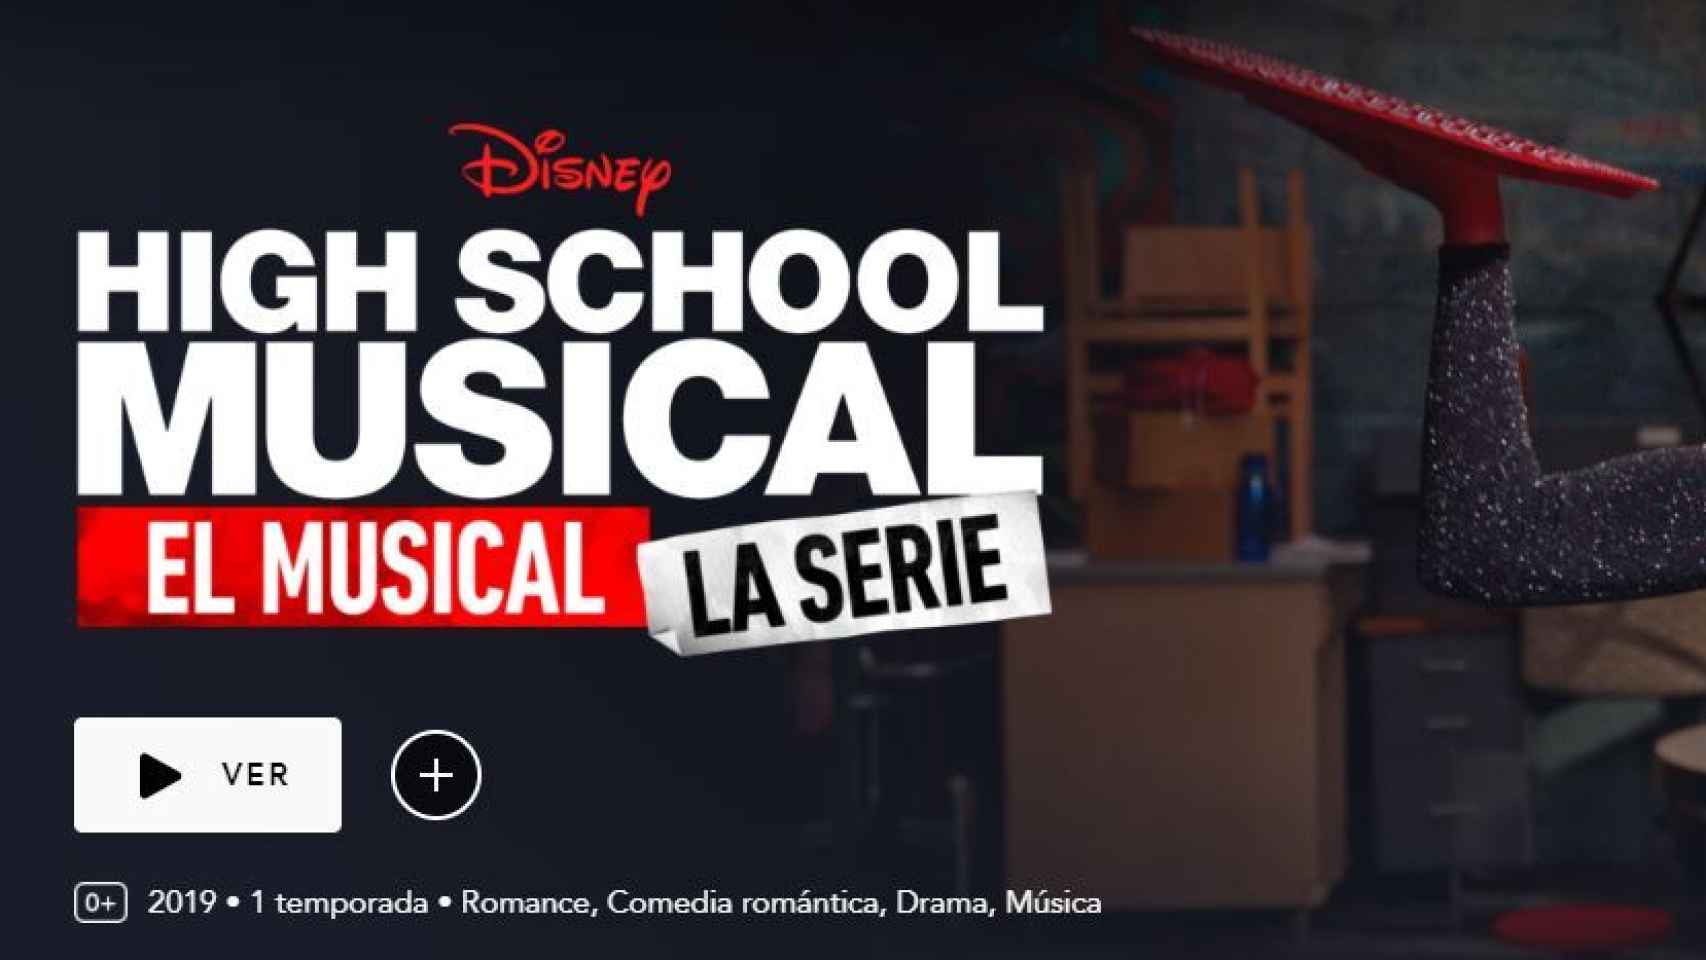 Entrada a High School Musical en Disney+